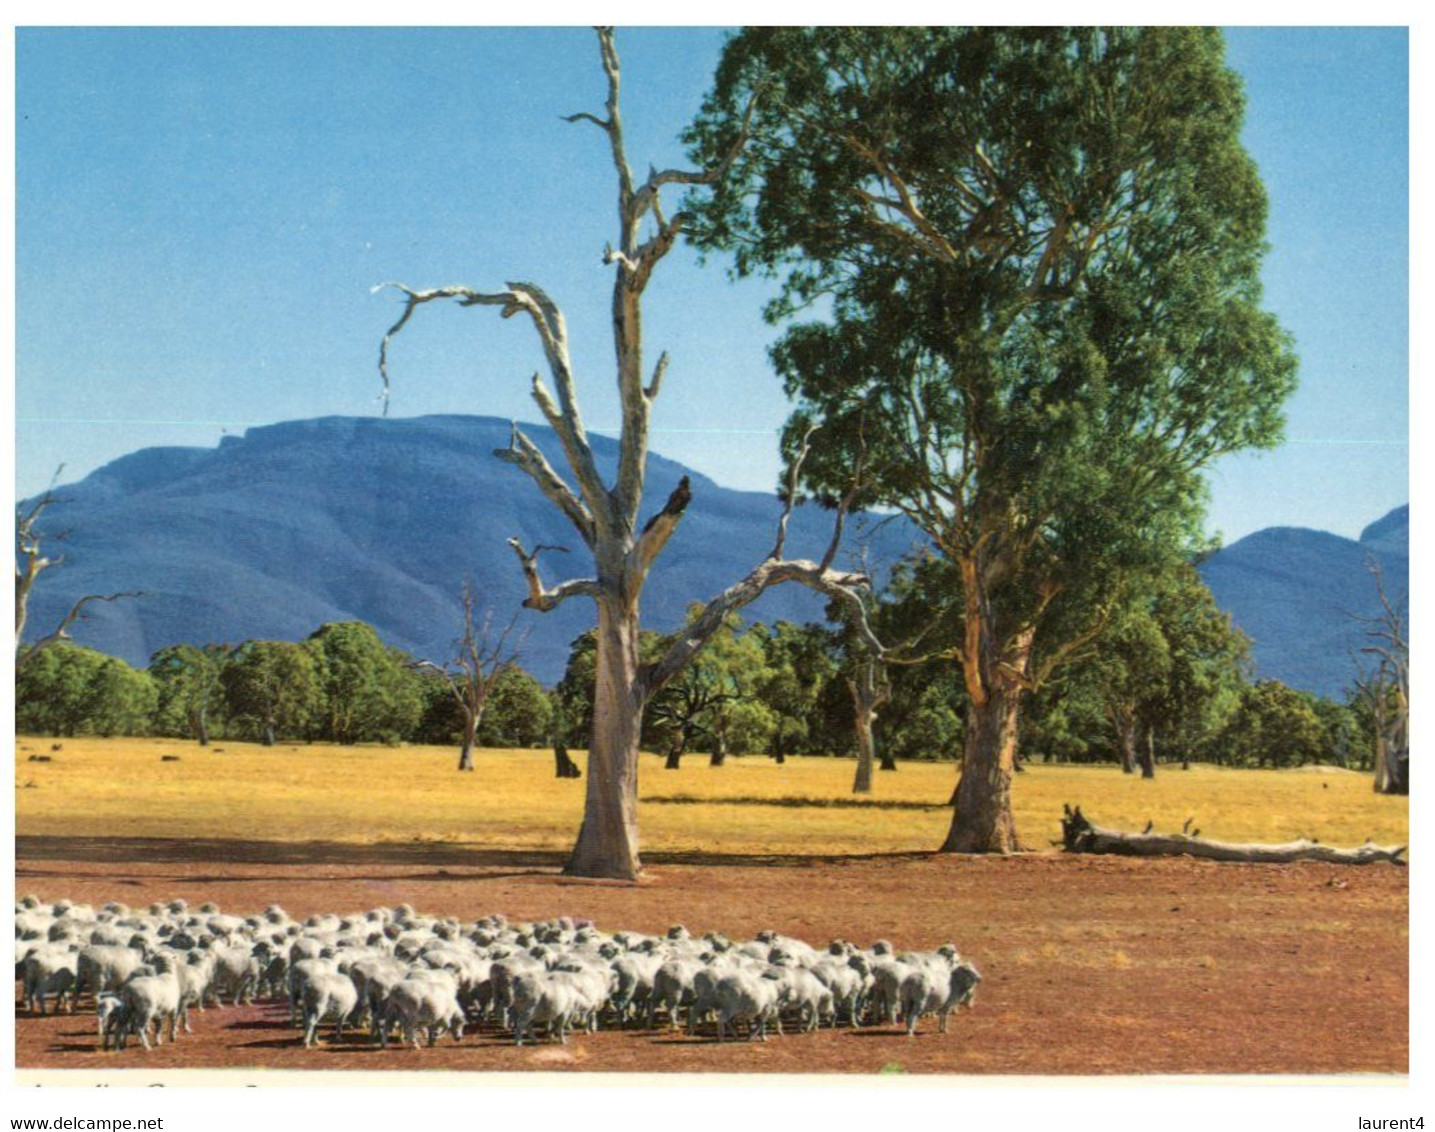 (S 1) Australia - NSW - Australian Sheep Farming - Outback